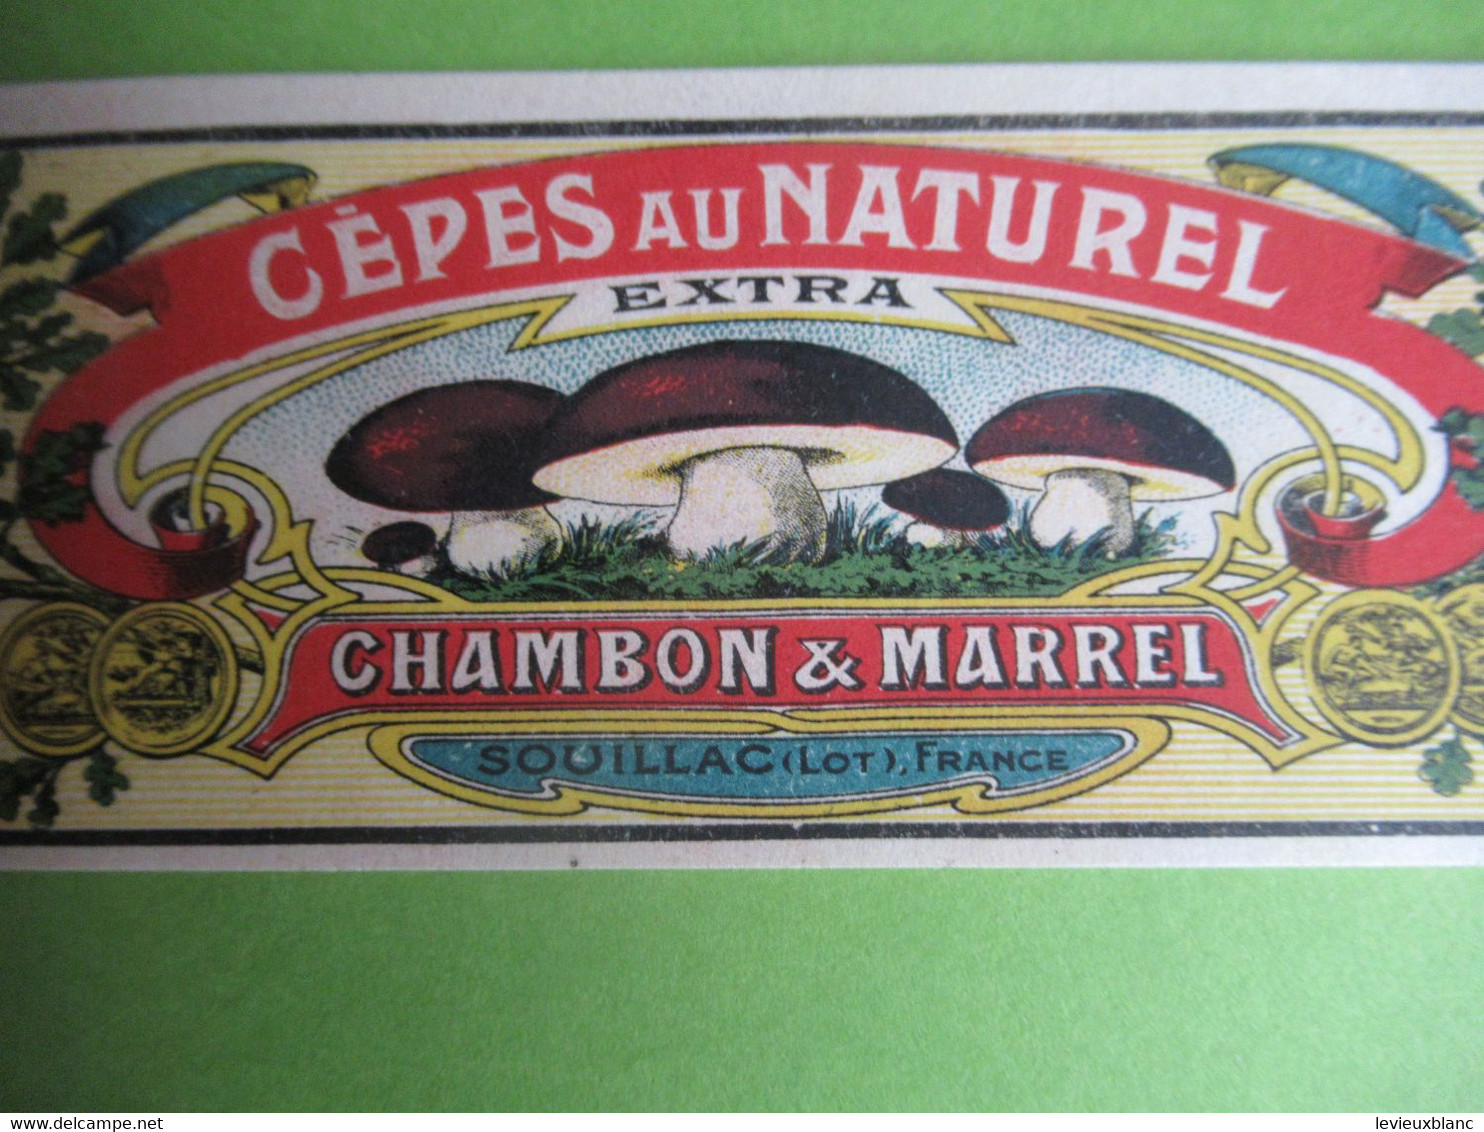 Etiquette Conserve/Cèpes Au Naturel /CHAMBON & MARREL/SOUILLAC( Lot ) Production JII/Ronteix Périgueux Début XX  ETIQ186 - Fruit En Groenten